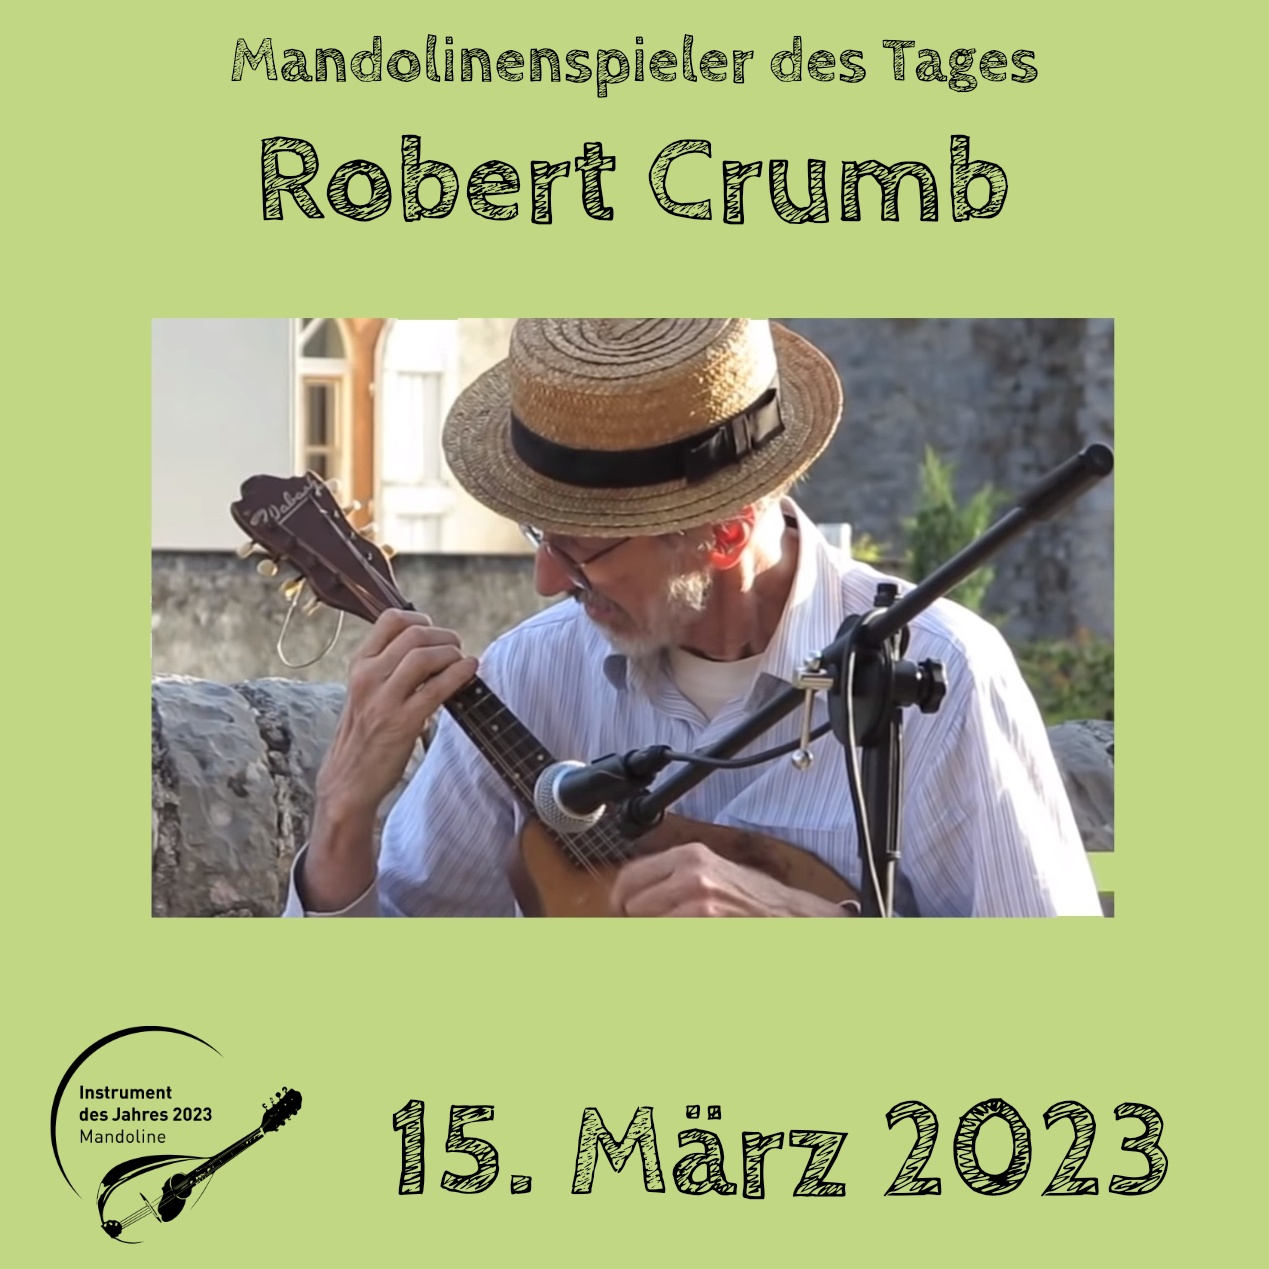 Robert Crumb Mandoline Instrument des Jahres 2023 Mandolinenspieler des Tages